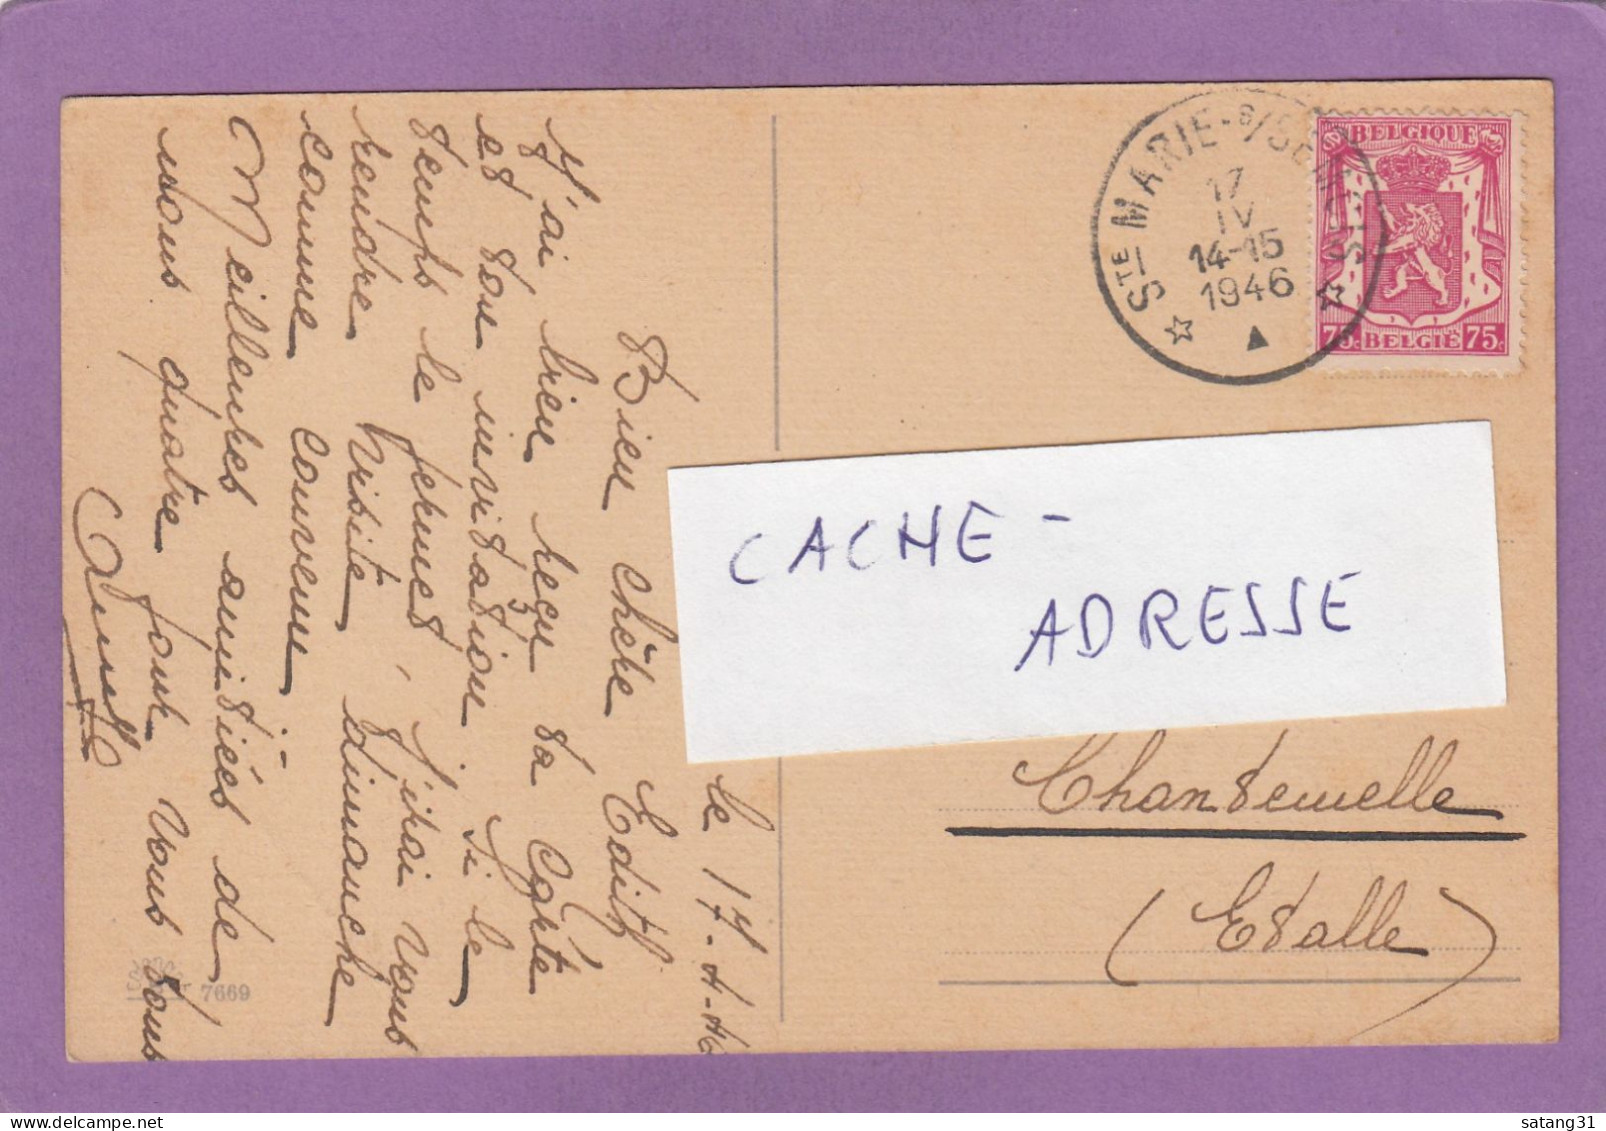 CARTE POSTALE DE SAINTE MARIE SUR BSEMOIS POUR CHANTENELLE,1946. - Lettres & Documents